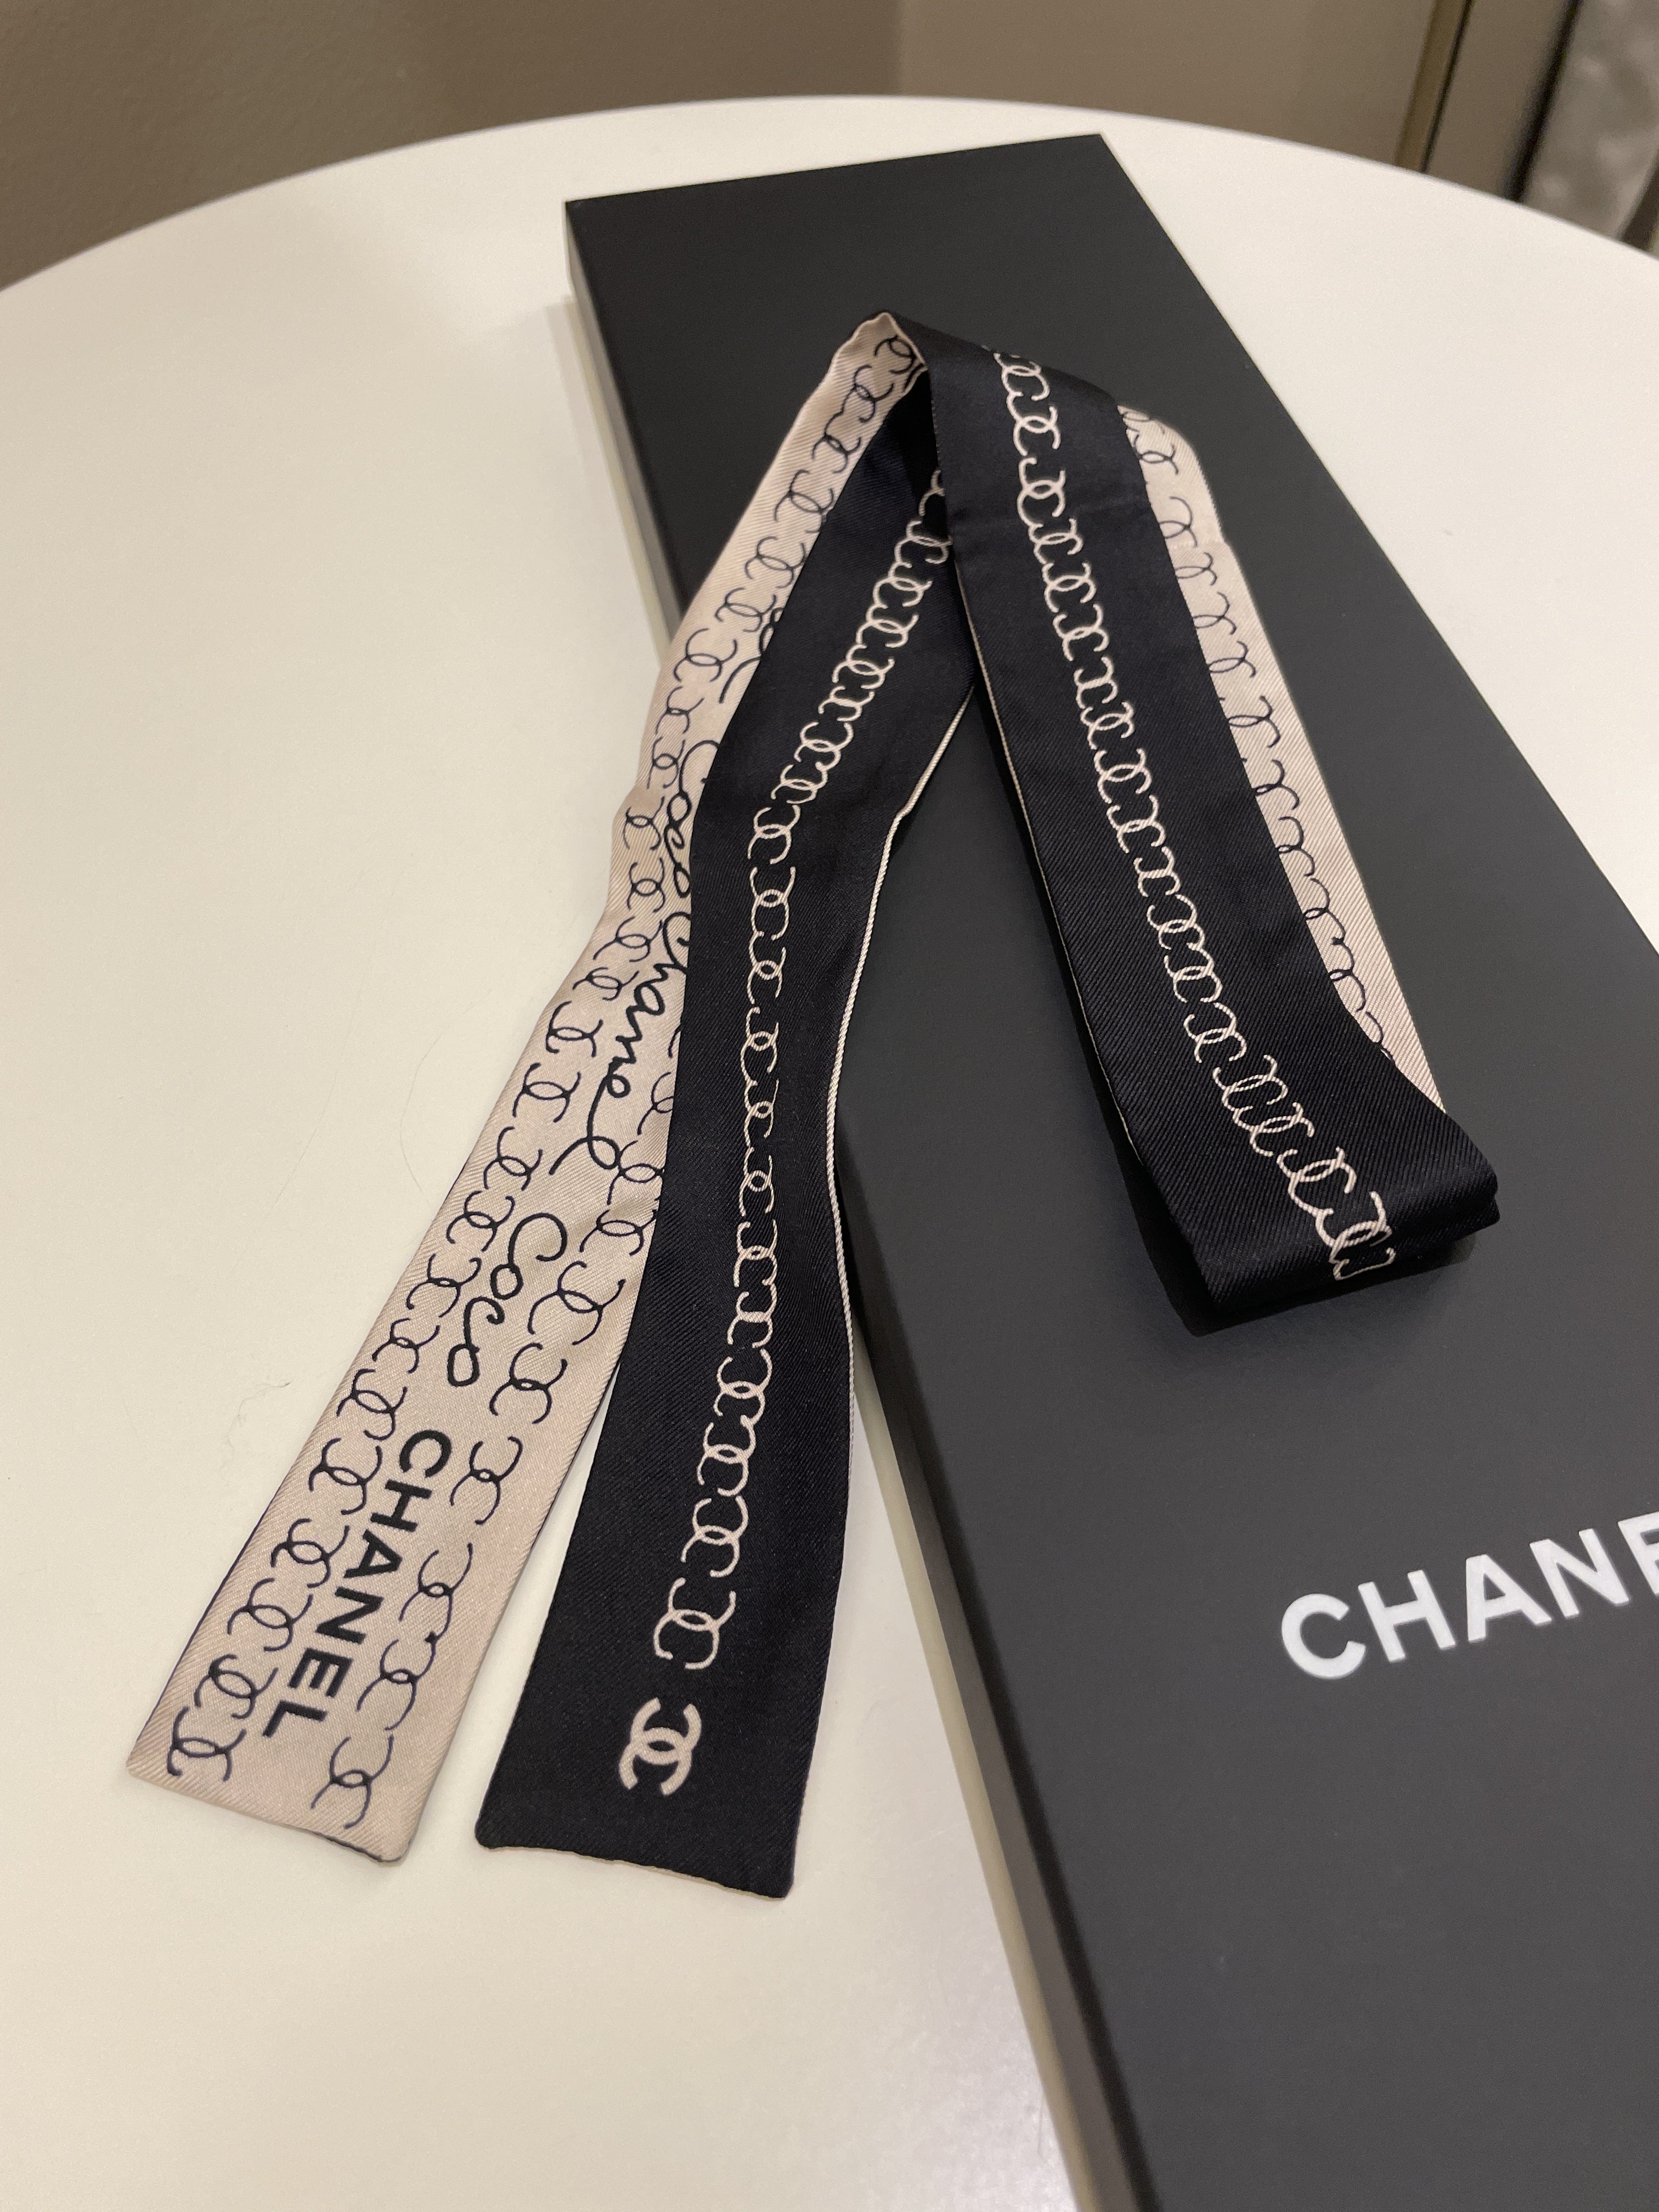 Chanel 22C Logo Script
Black / Beige